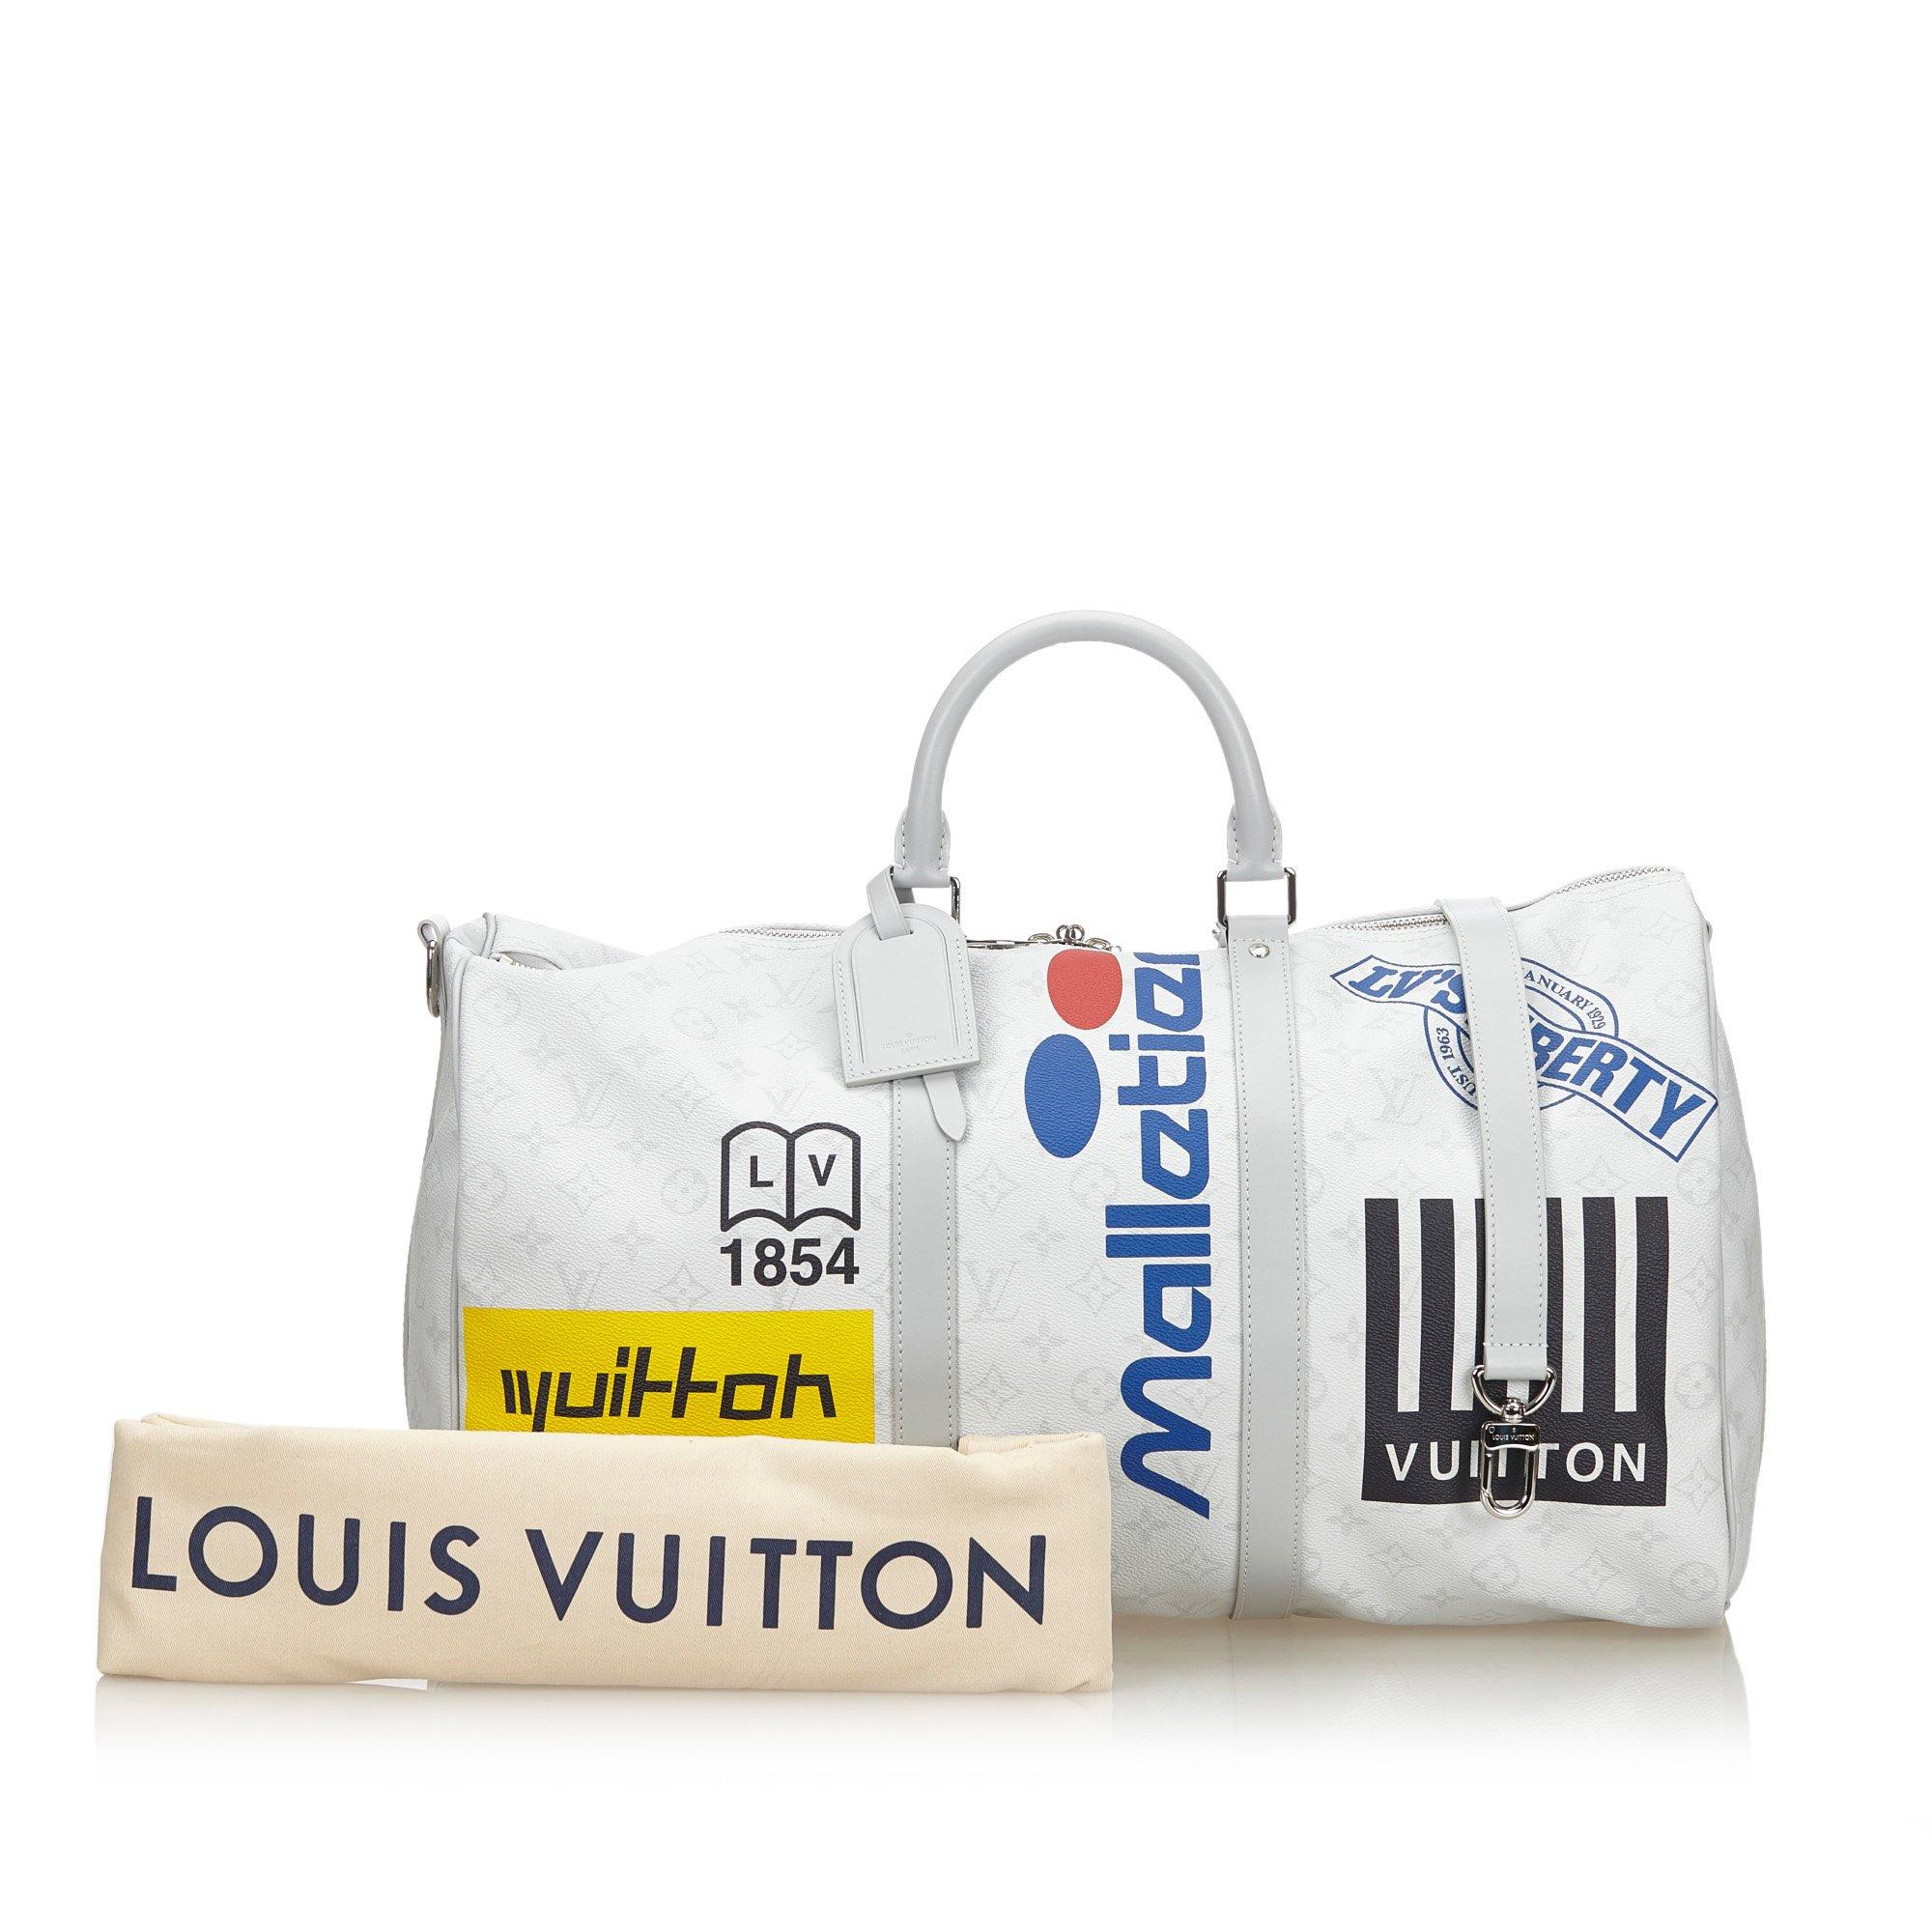 Louis Vuitton Keepall Bandoulière 50 Optic White autres Toiles Monogram